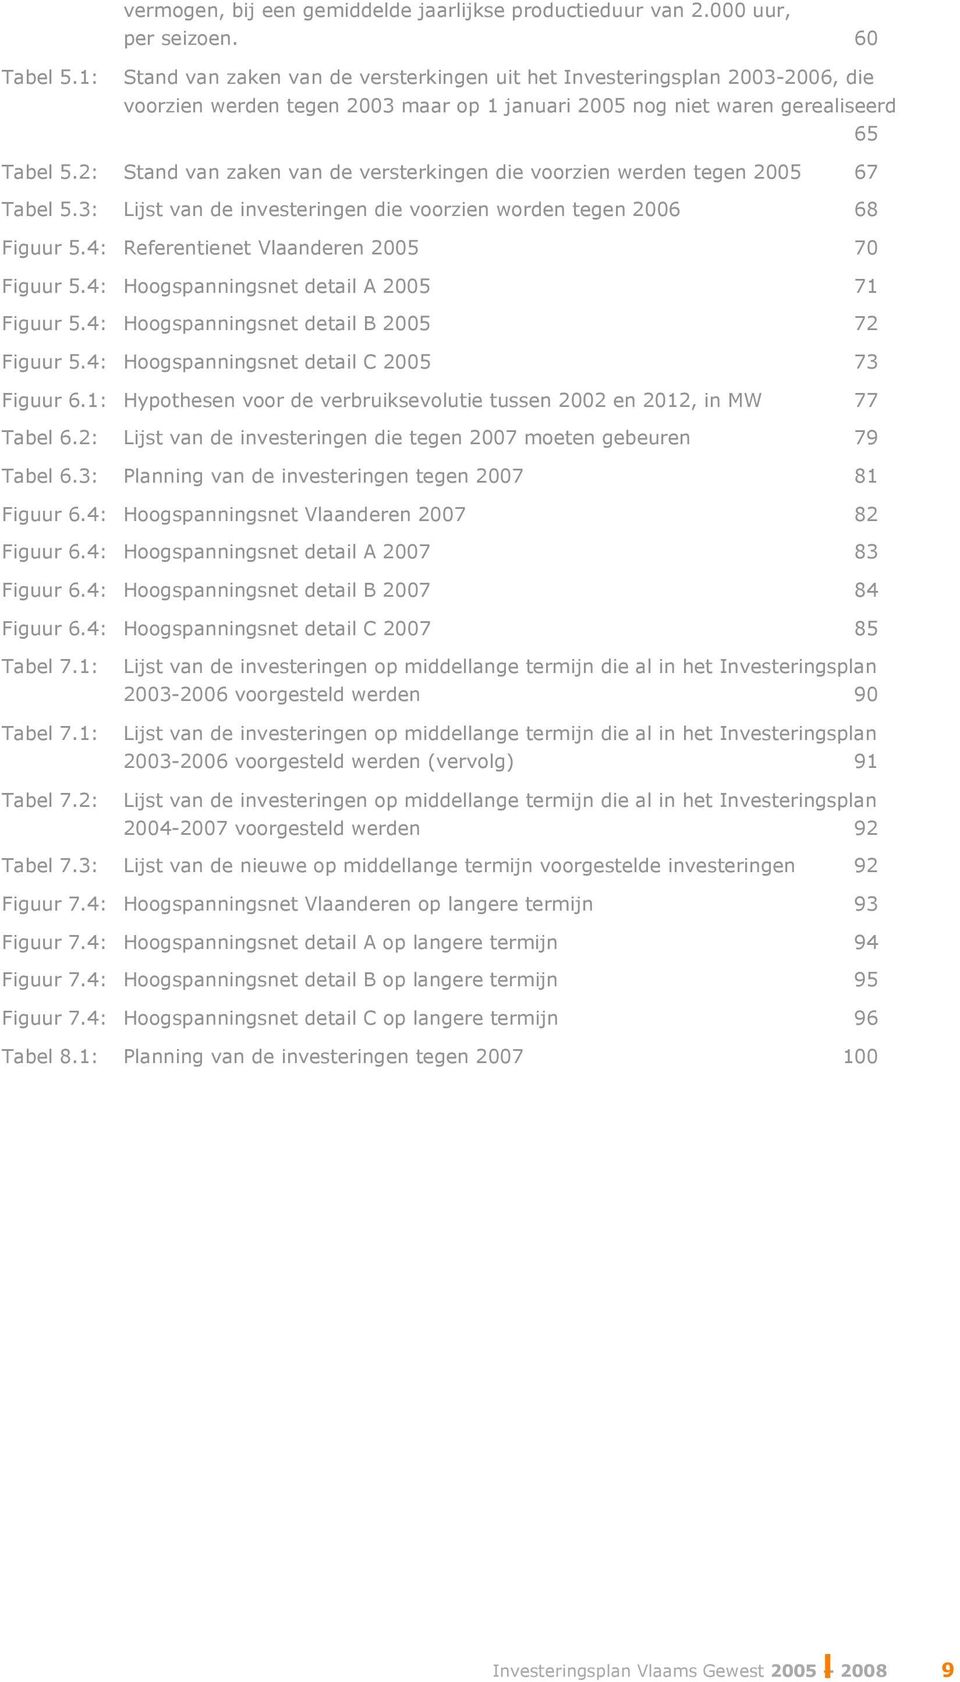 2: Stand van zaken van de versterkingen die voorzien werden tegen 2005 67 Tabel 5.3: Lijst van de investeringen die voorzien worden tegen 2006 68 Figuur 5.4: Referentienet Vlaanderen 2005 70 Figuur 5.